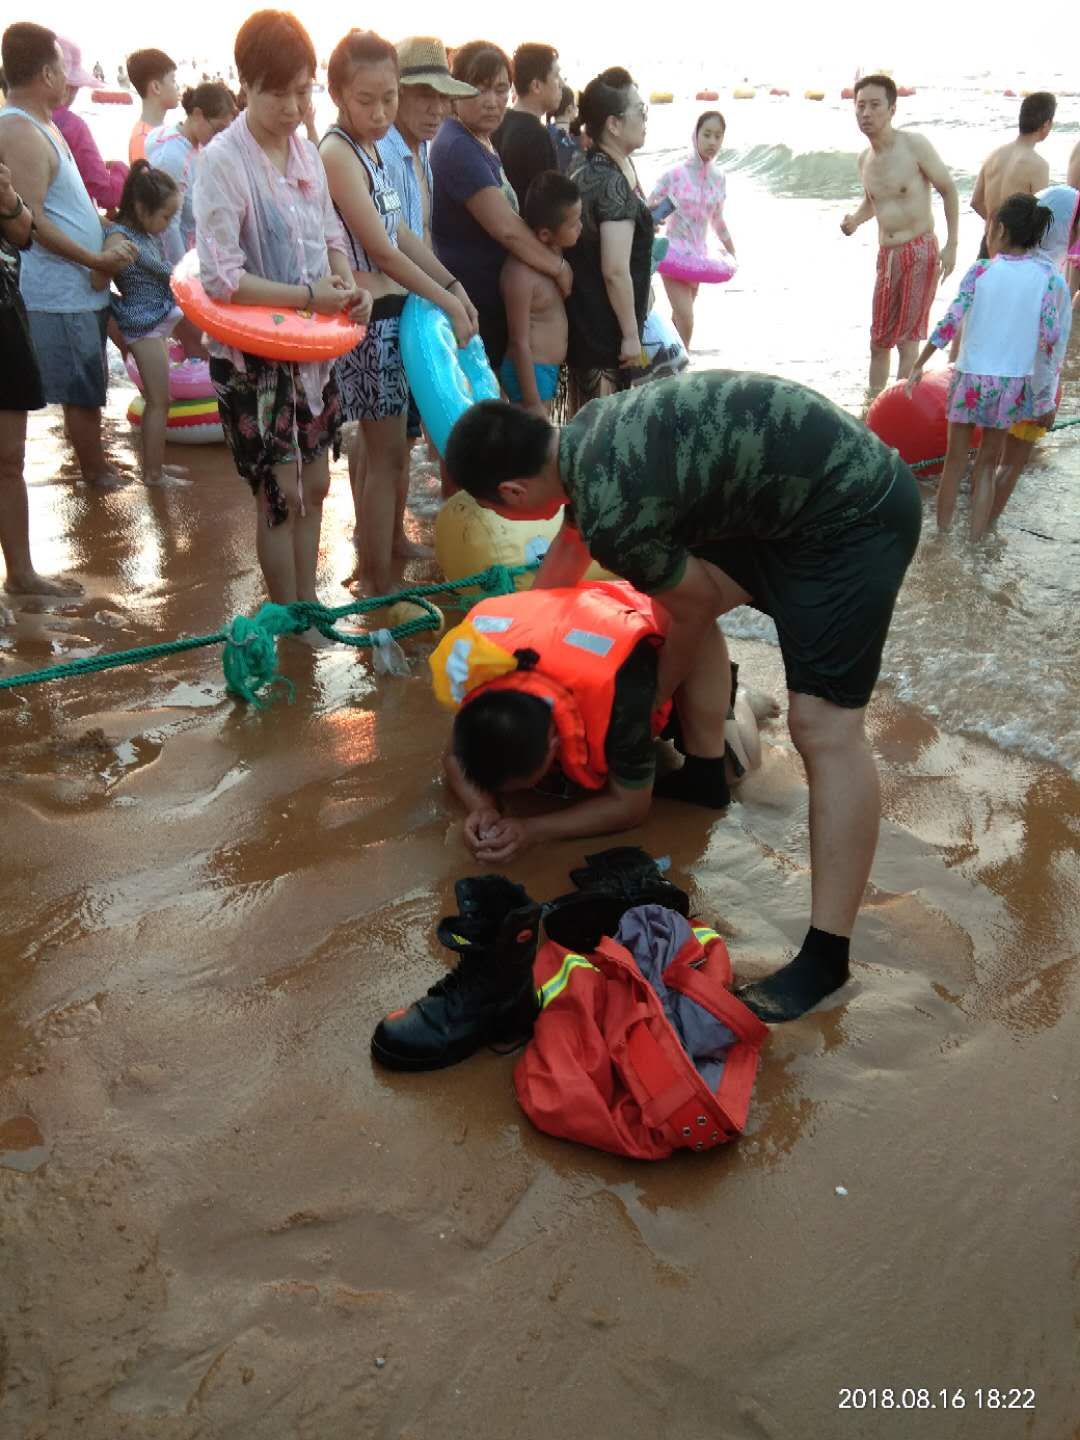 威海发生游客溺水事件 消防官兵出警救人敲响